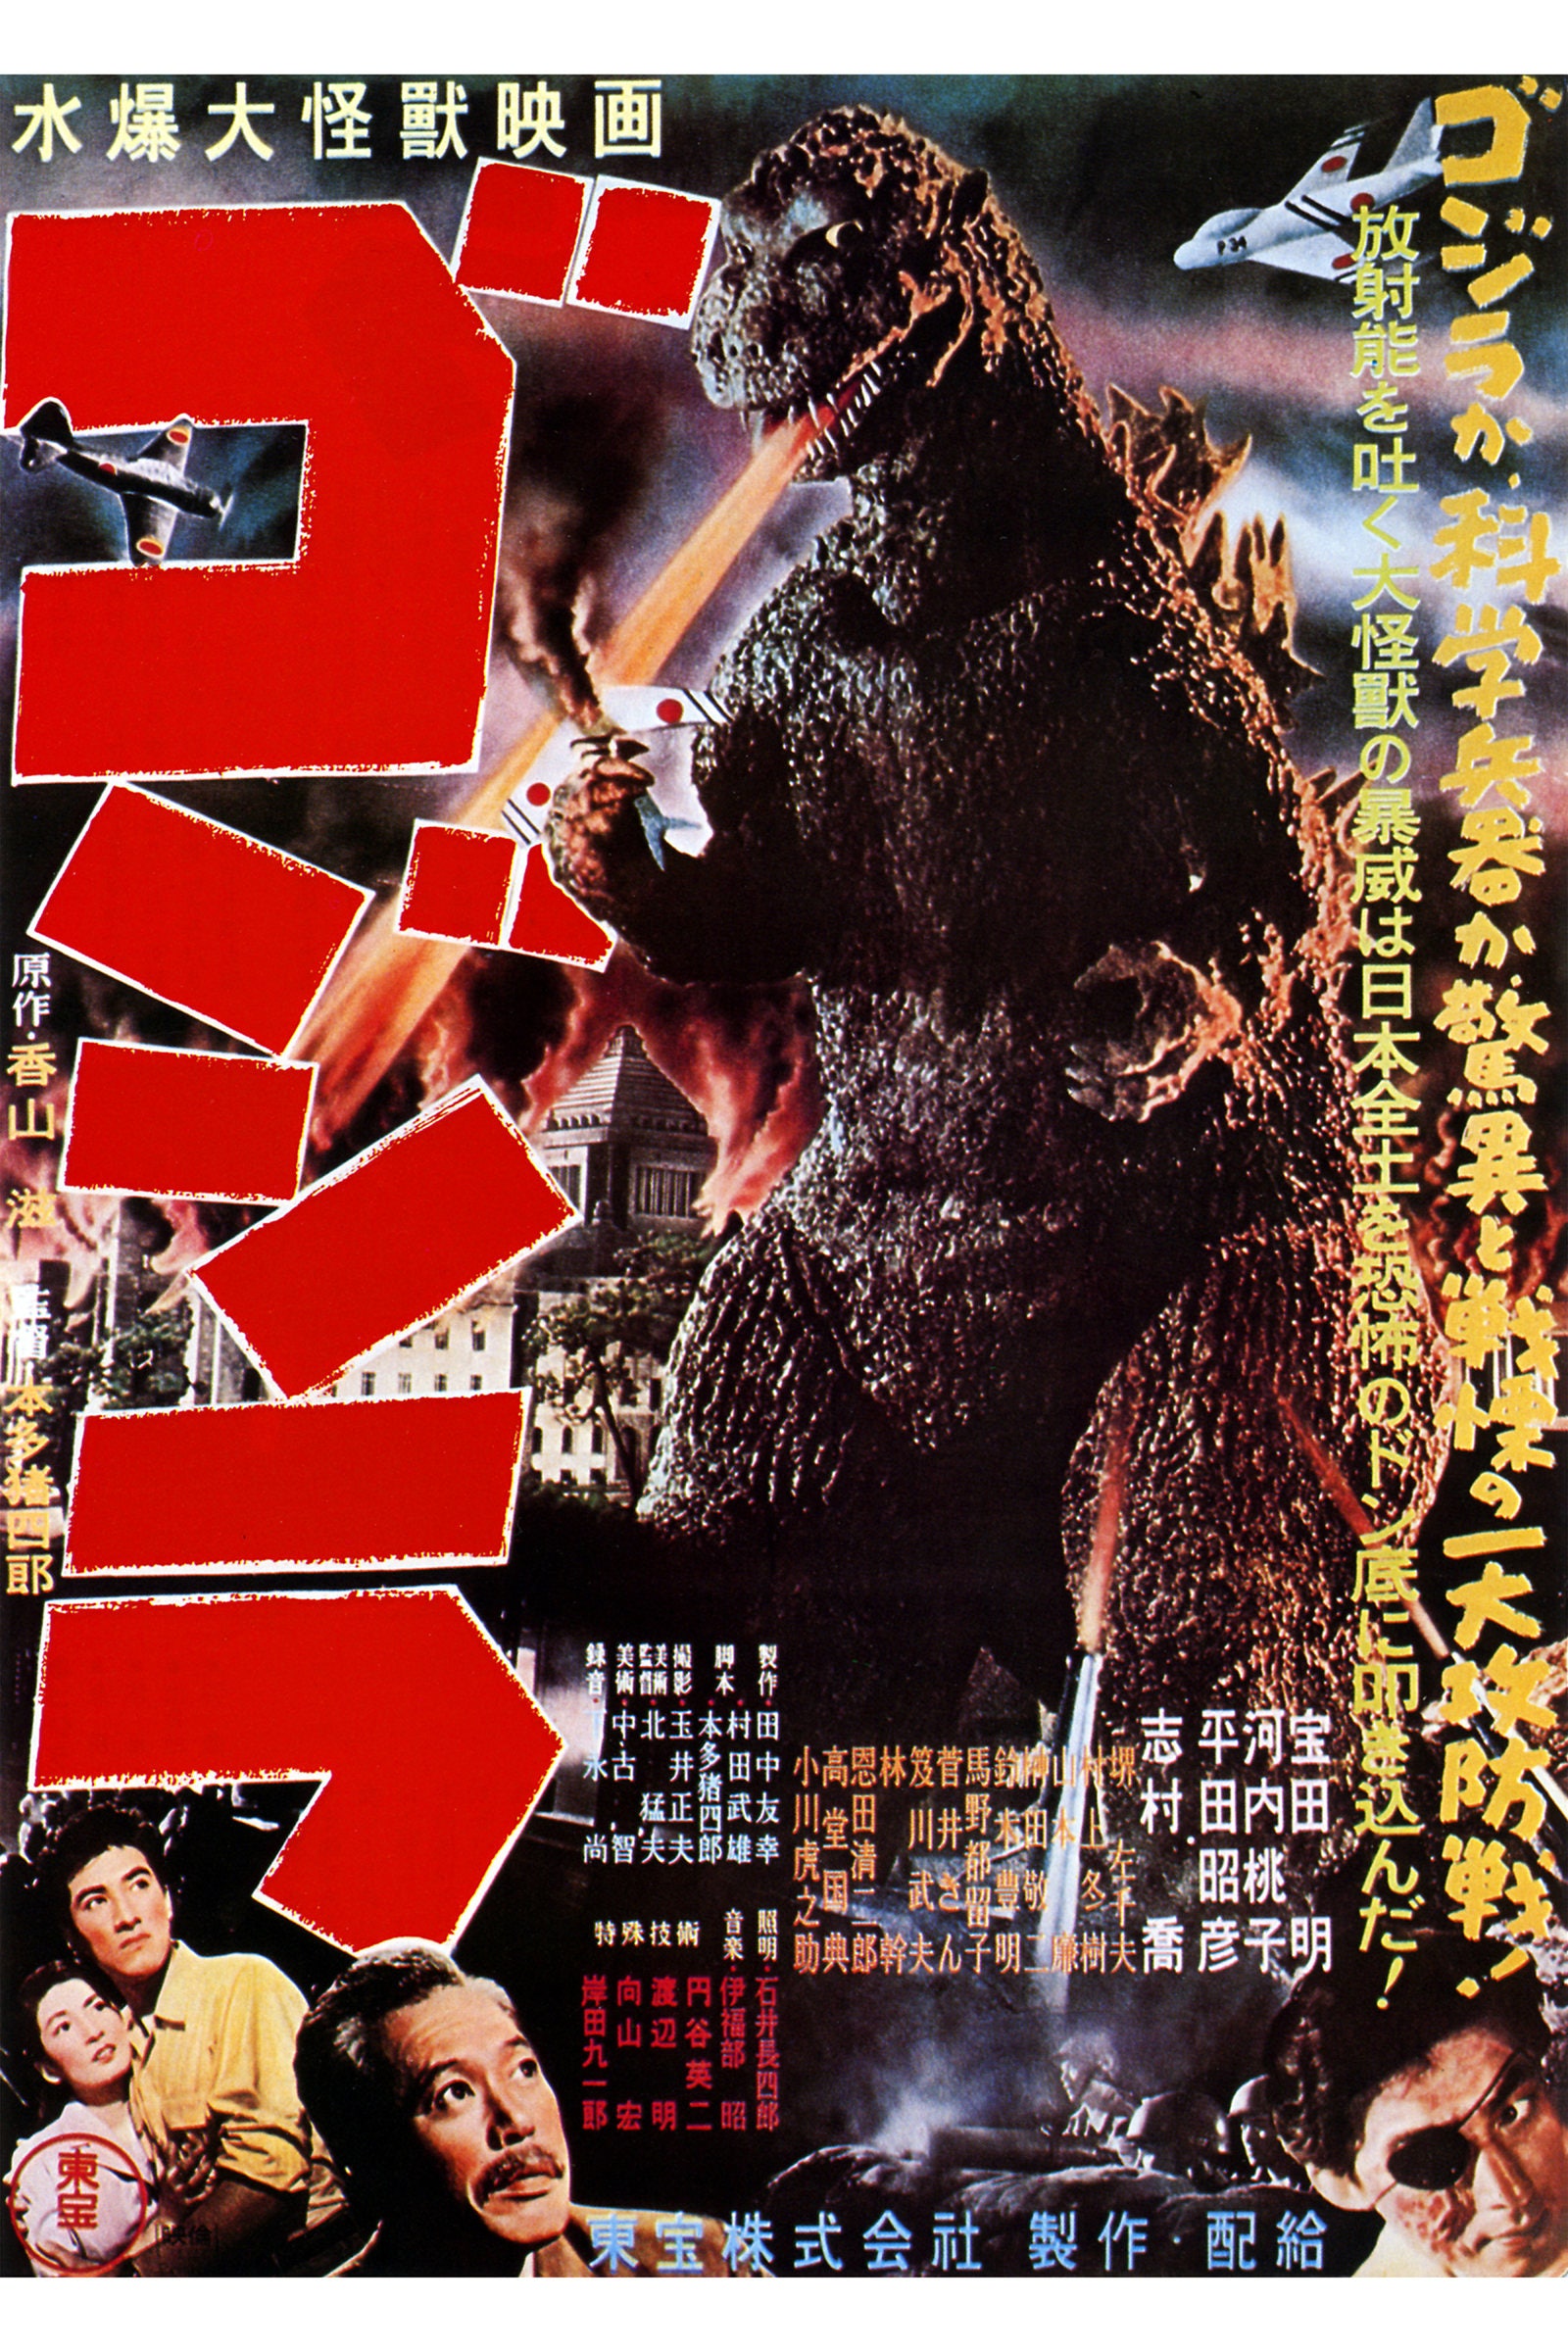 Gojira Godzilla 1954 Japanese Movie Poster Etsy